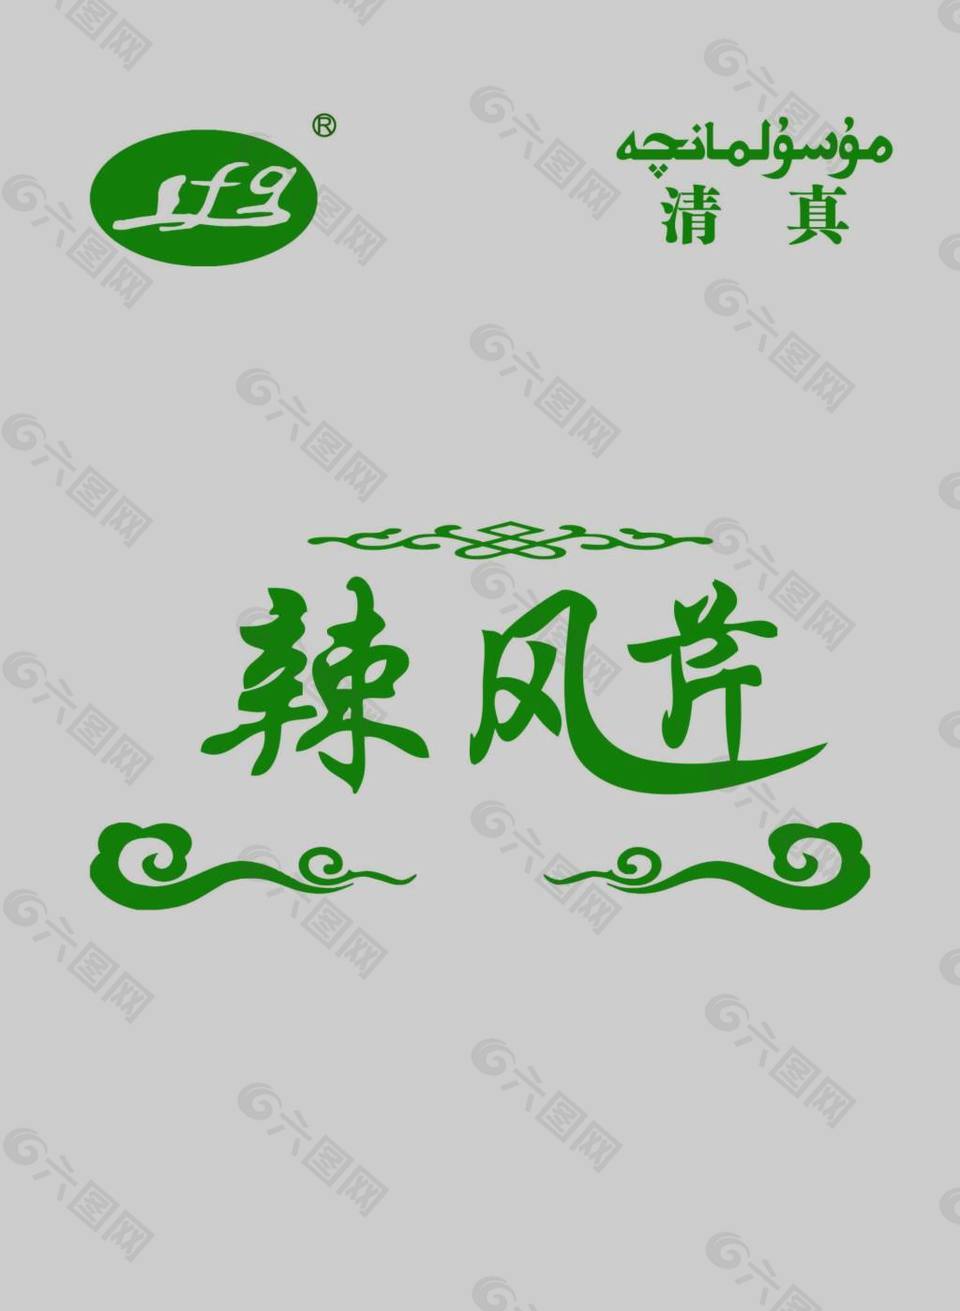 辣风芹logo  包装